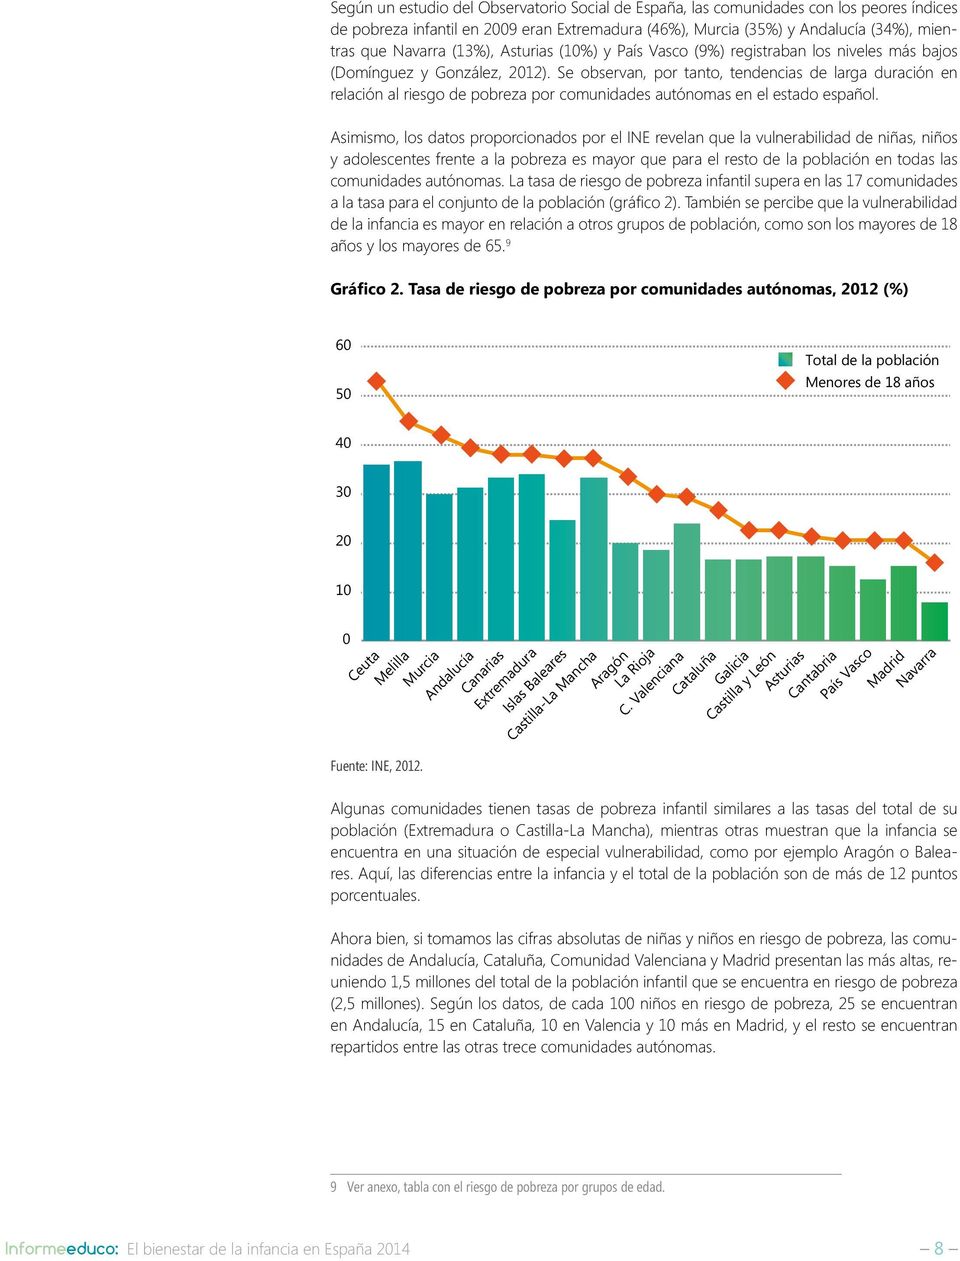 Se observan, por tanto, tendencias de larga duración en relación al riesgo de pobreza por comunidades autónomas en el estado español.